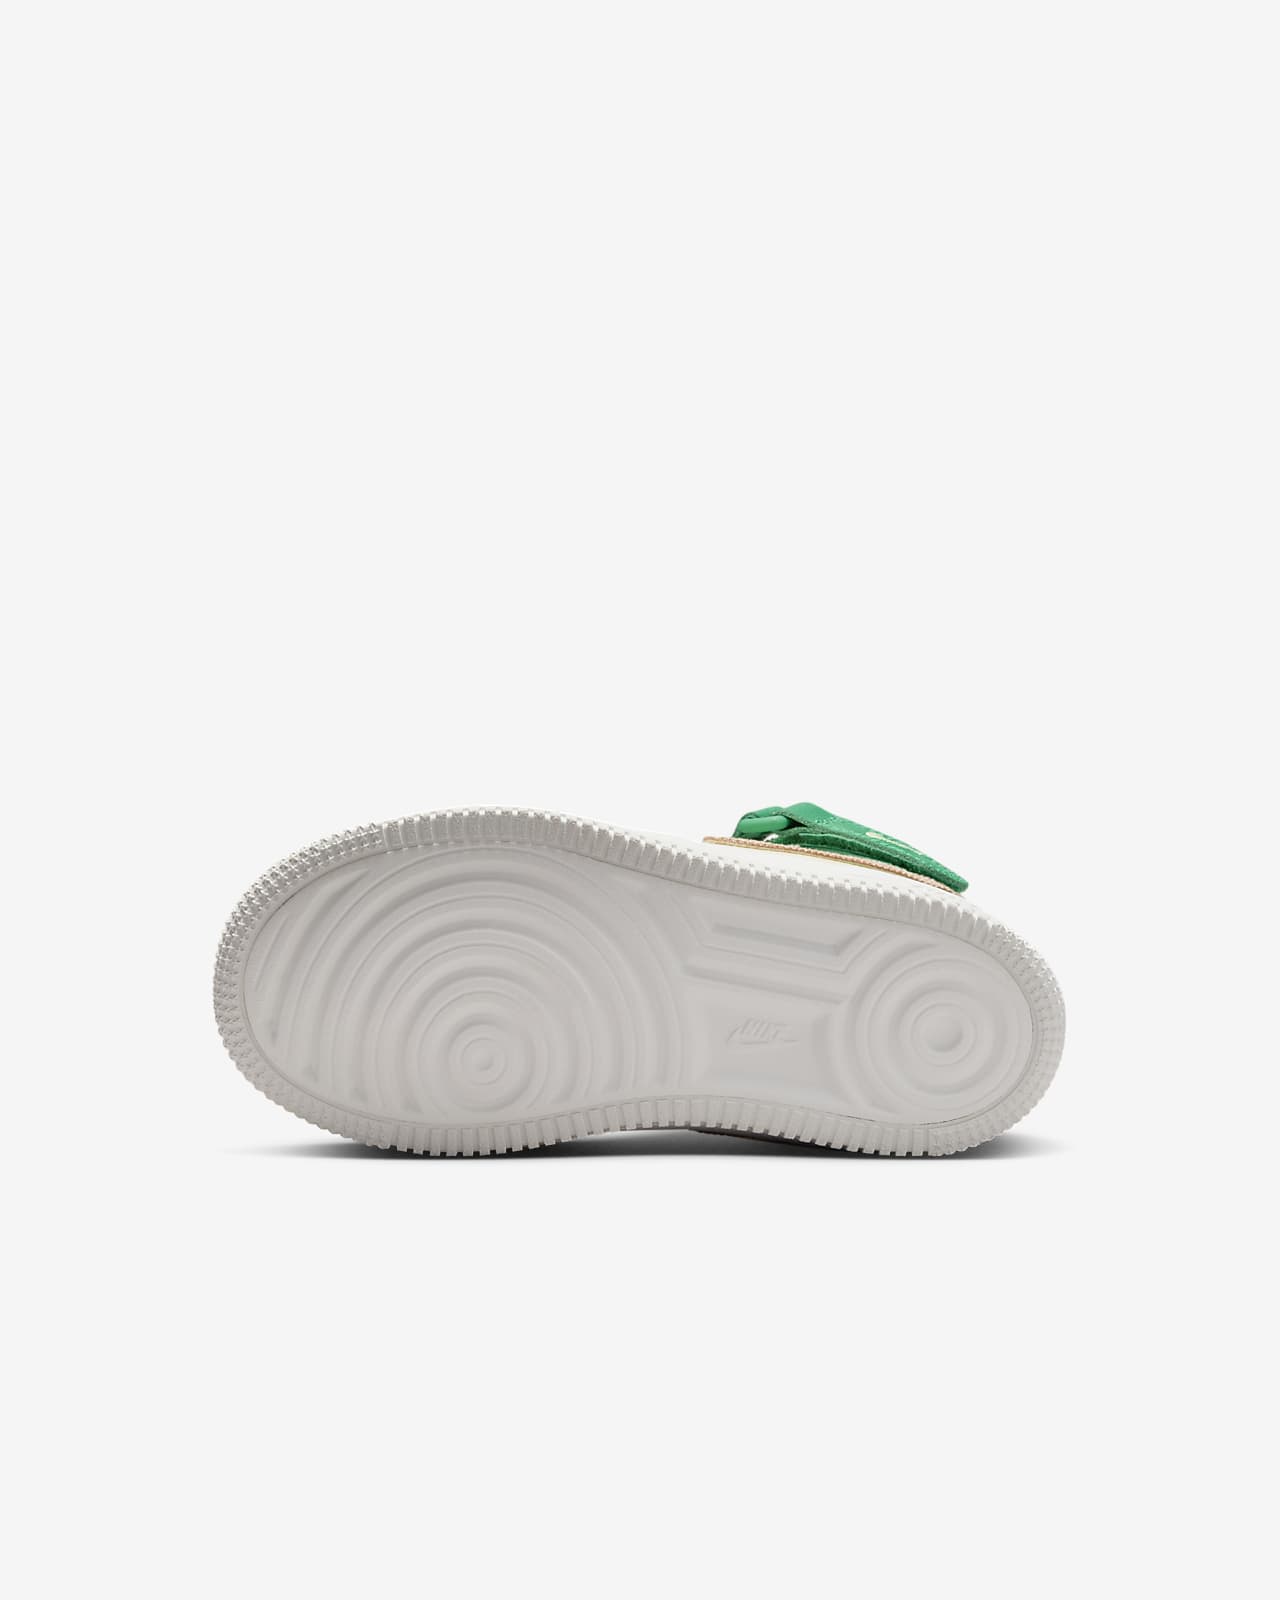 Nike Force 1 Zapatillas - Niño/a pequeño/a - Gris